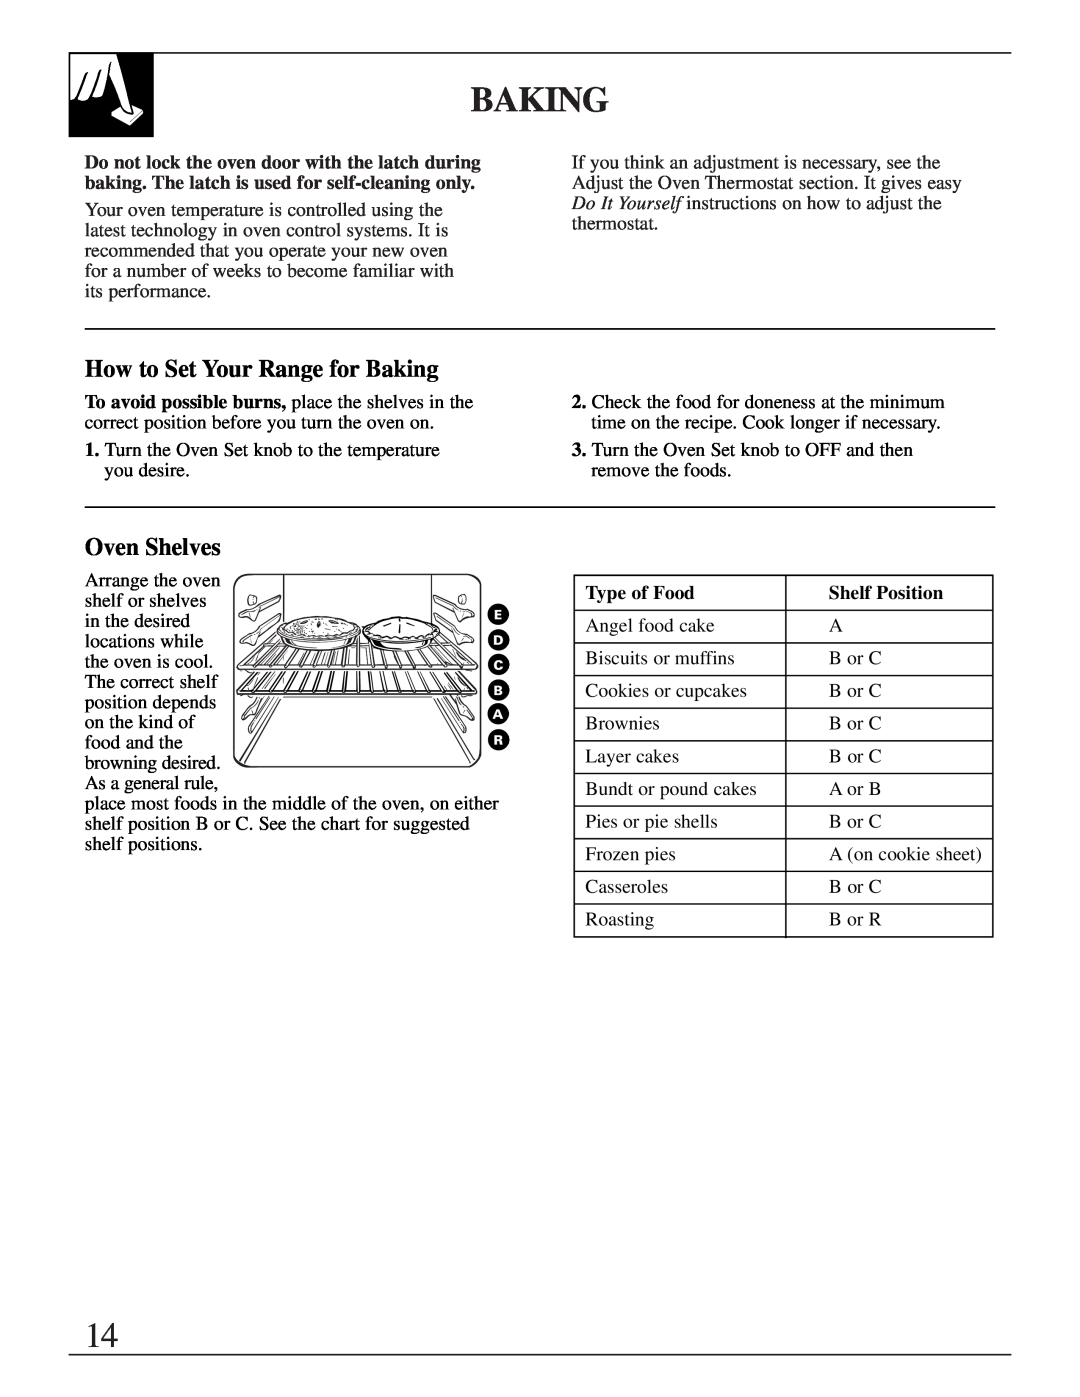 GE JGBP40, EGR3001, JR EGR3000 manual How to Set Your Range for Baking, Oven Shelves, Type of Food, Shelf Position 